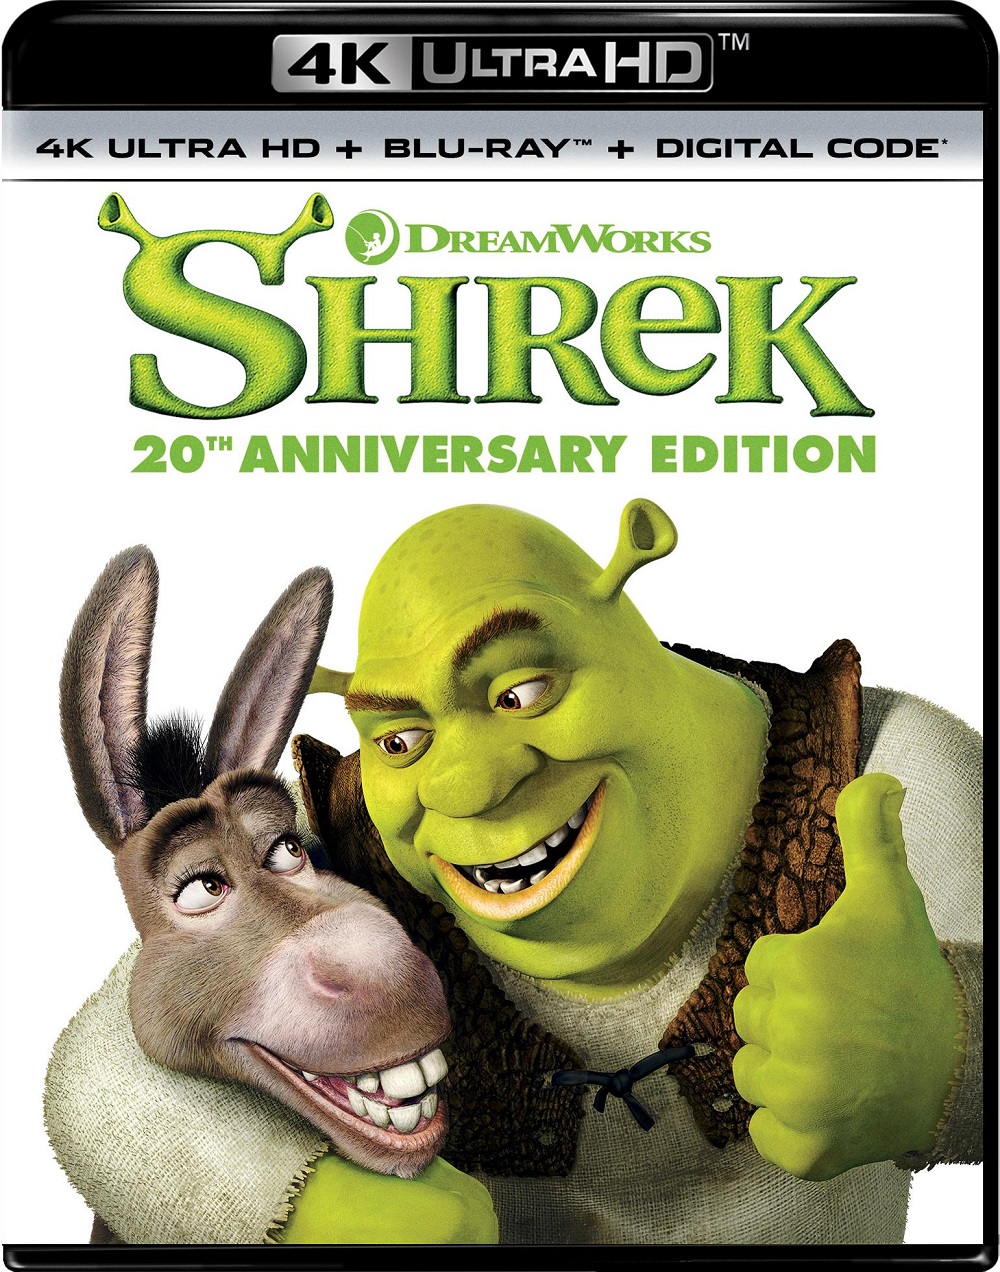  Shrek [20th Anniversary Edition] [Includes Digital Copy] [4K Ultra HD Blu-ray/Blu-ray] [2001]